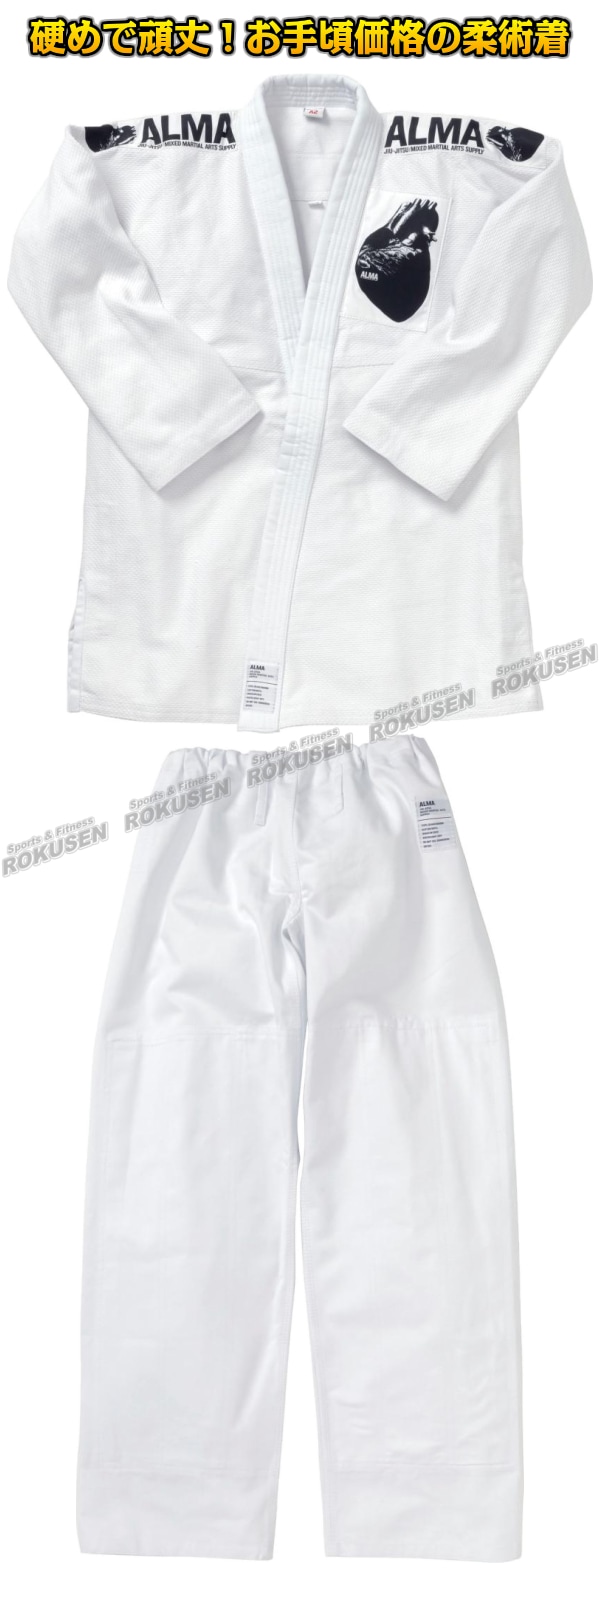 ALMA・アルマ海外製柔術着 JU2 白/黒/青 上下帯セット 柔術衣 柔術